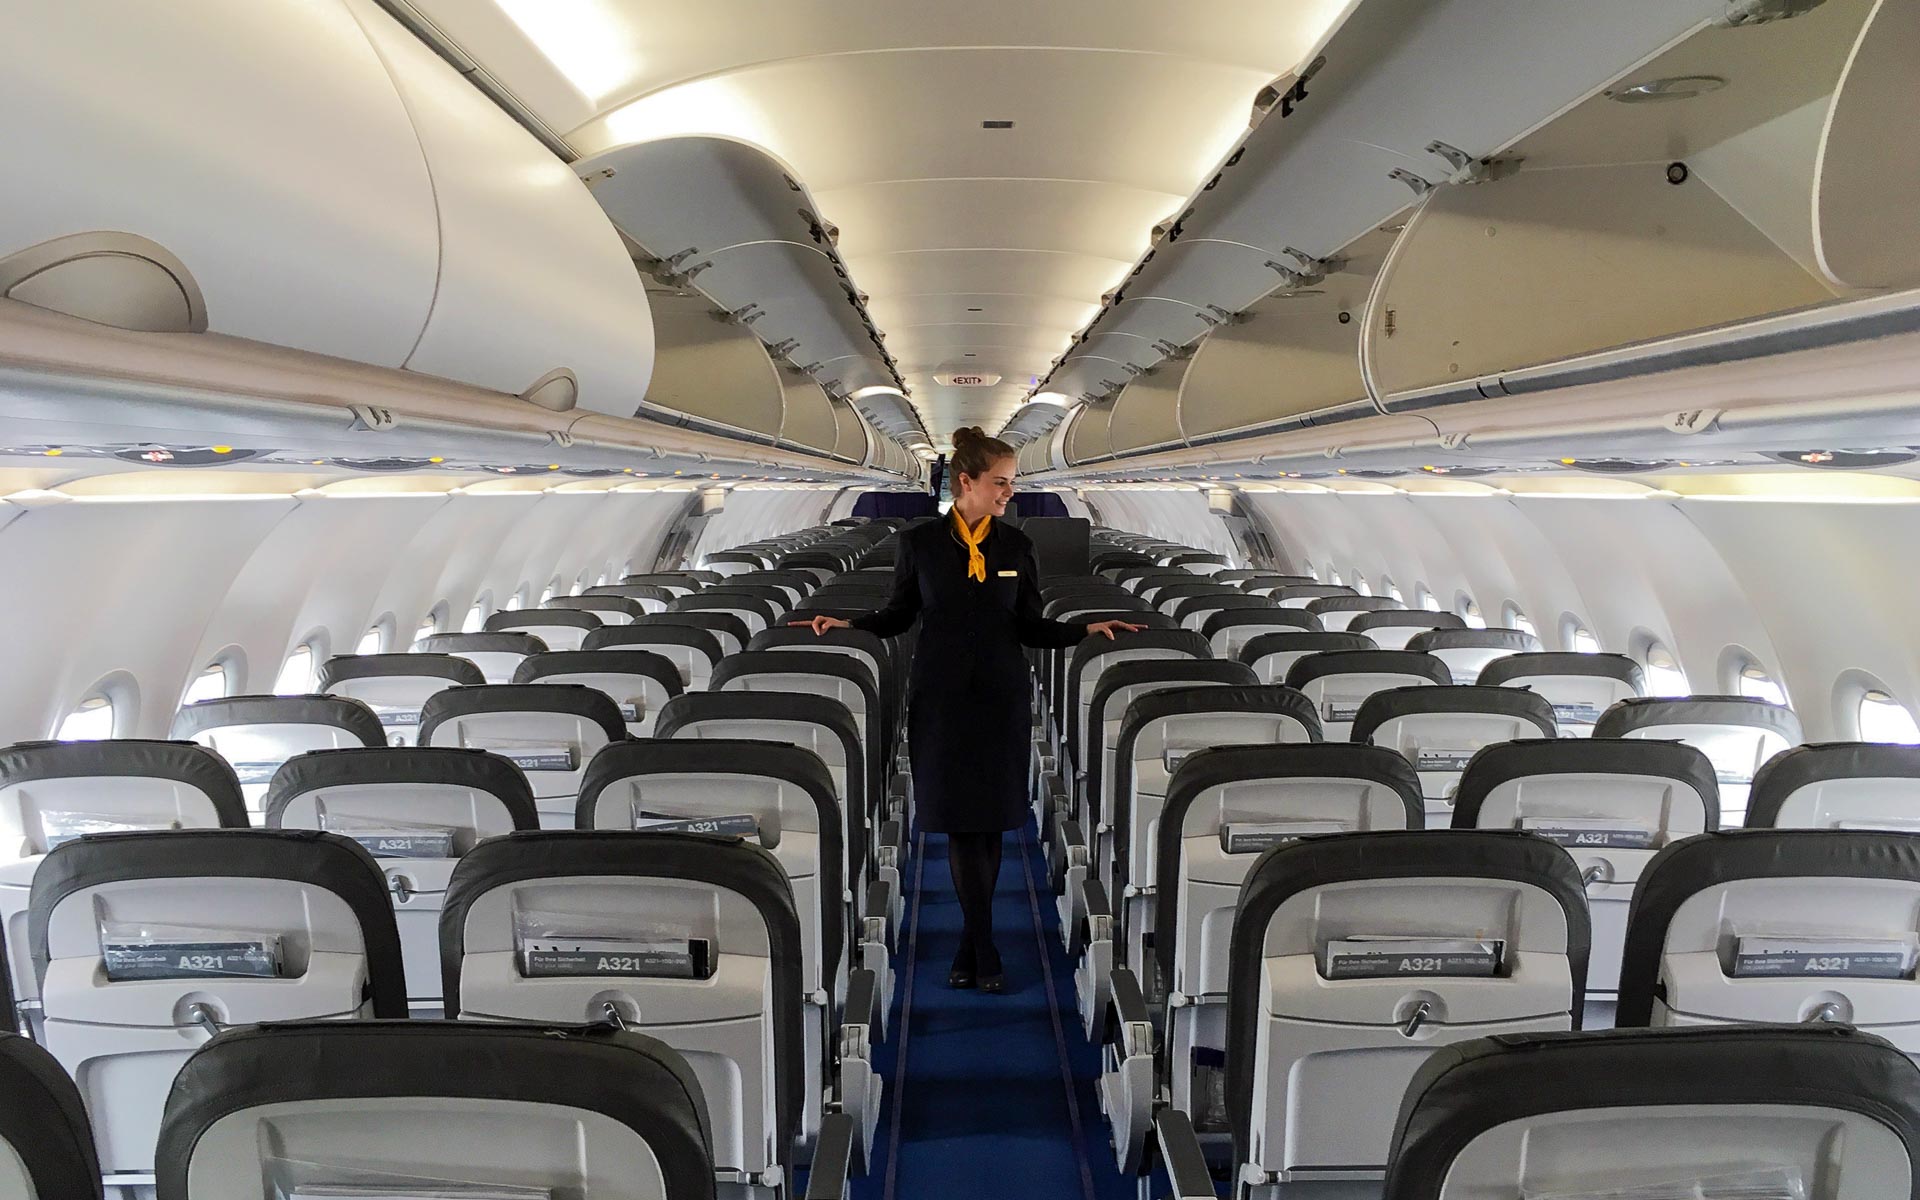 Eine Stewardess geht durch den Flur eines Flugzeuges und überprüft die Sitzreihen.